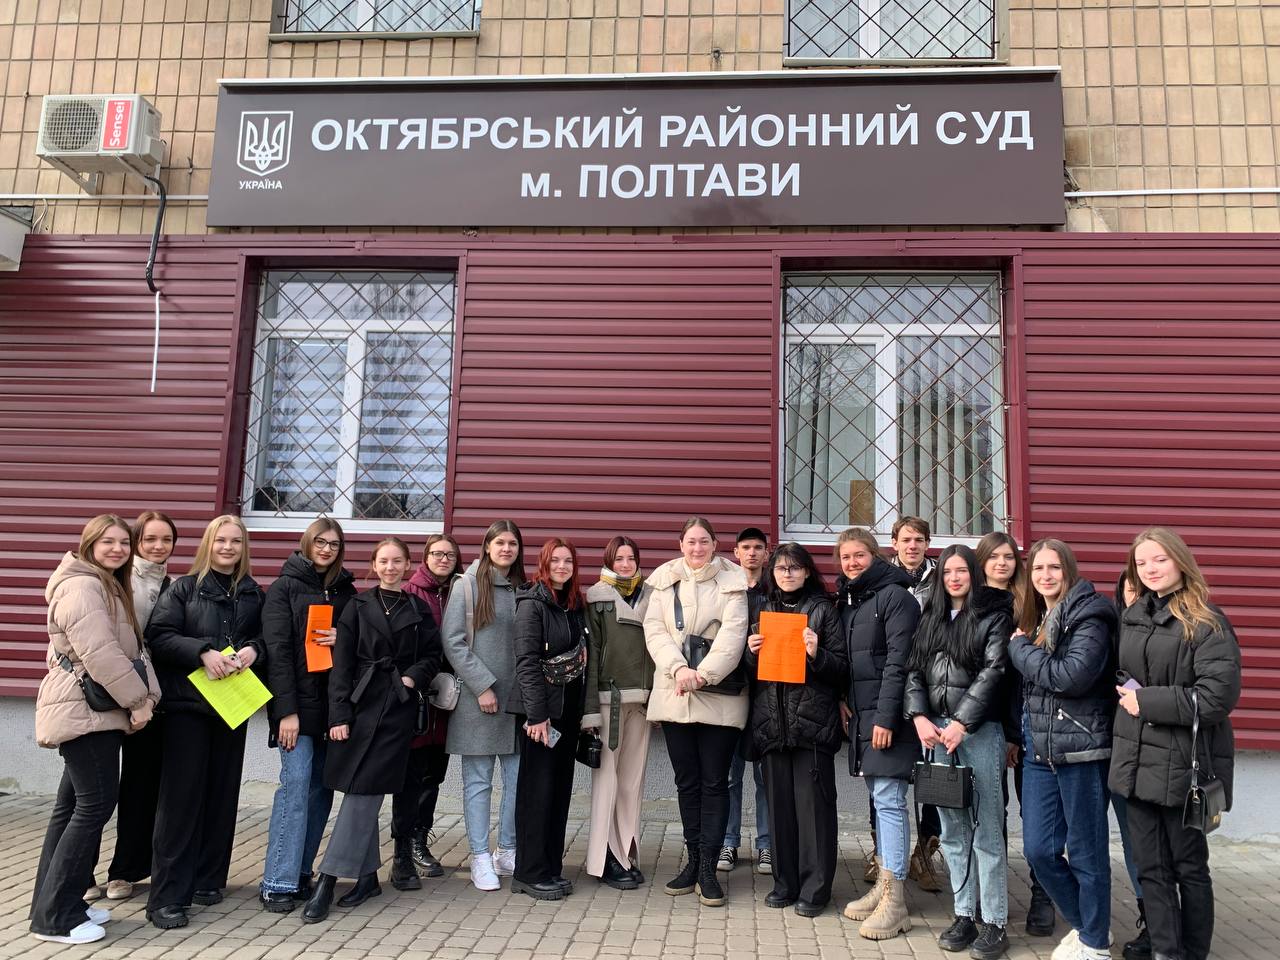 Майбутні правники ознайомилися з діяльністю судових органів на прикладі Октябрського районного суду міста Полтави